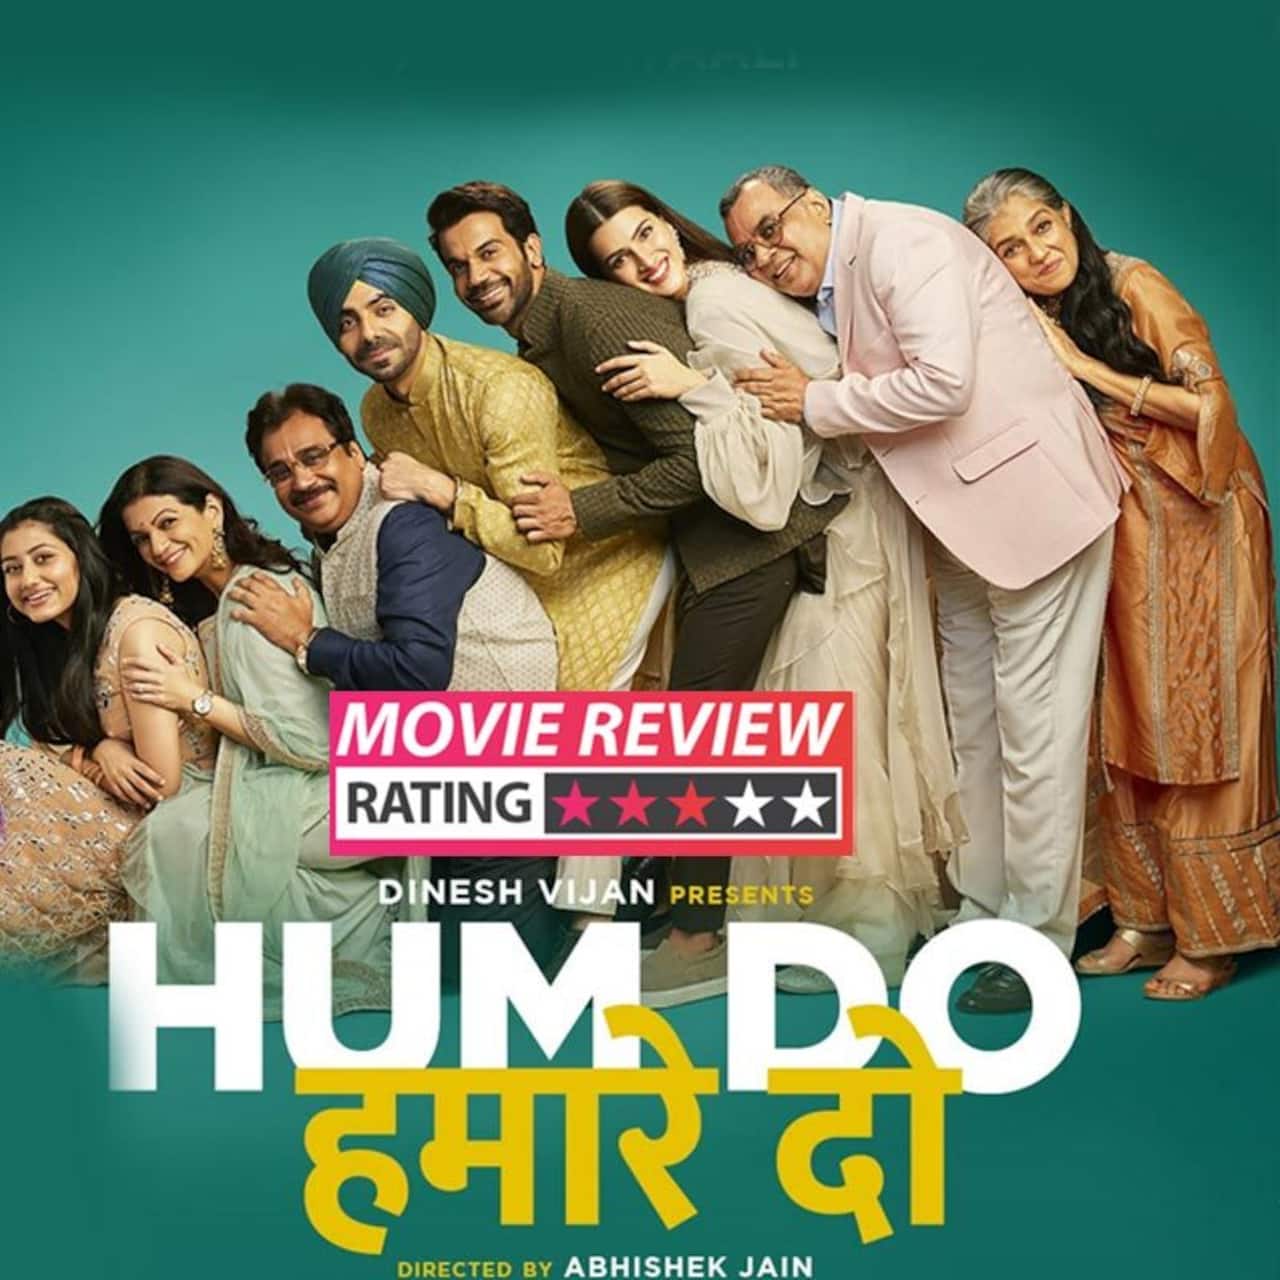 Hum Do Hamare Do Review: Rajkummar Rao, Kriti Sanon’s family dramedy has its heart in the right place